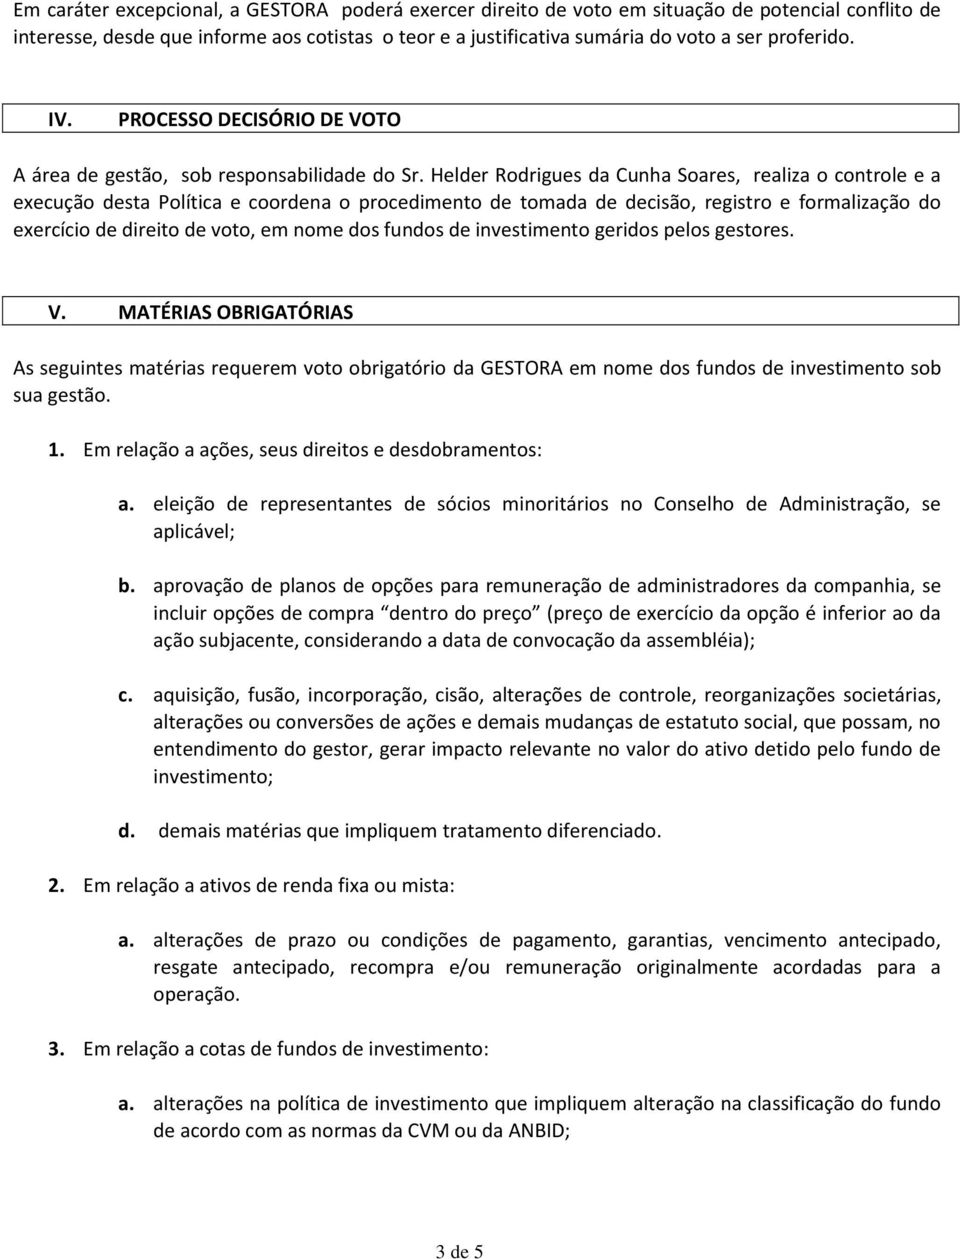 Helder Rodrigues da Cunha Soares, realiza o controle e a execução desta Política e coordena o procedimento de tomada de decisão, registro e formalização do exercício de direito de voto, em nome dos